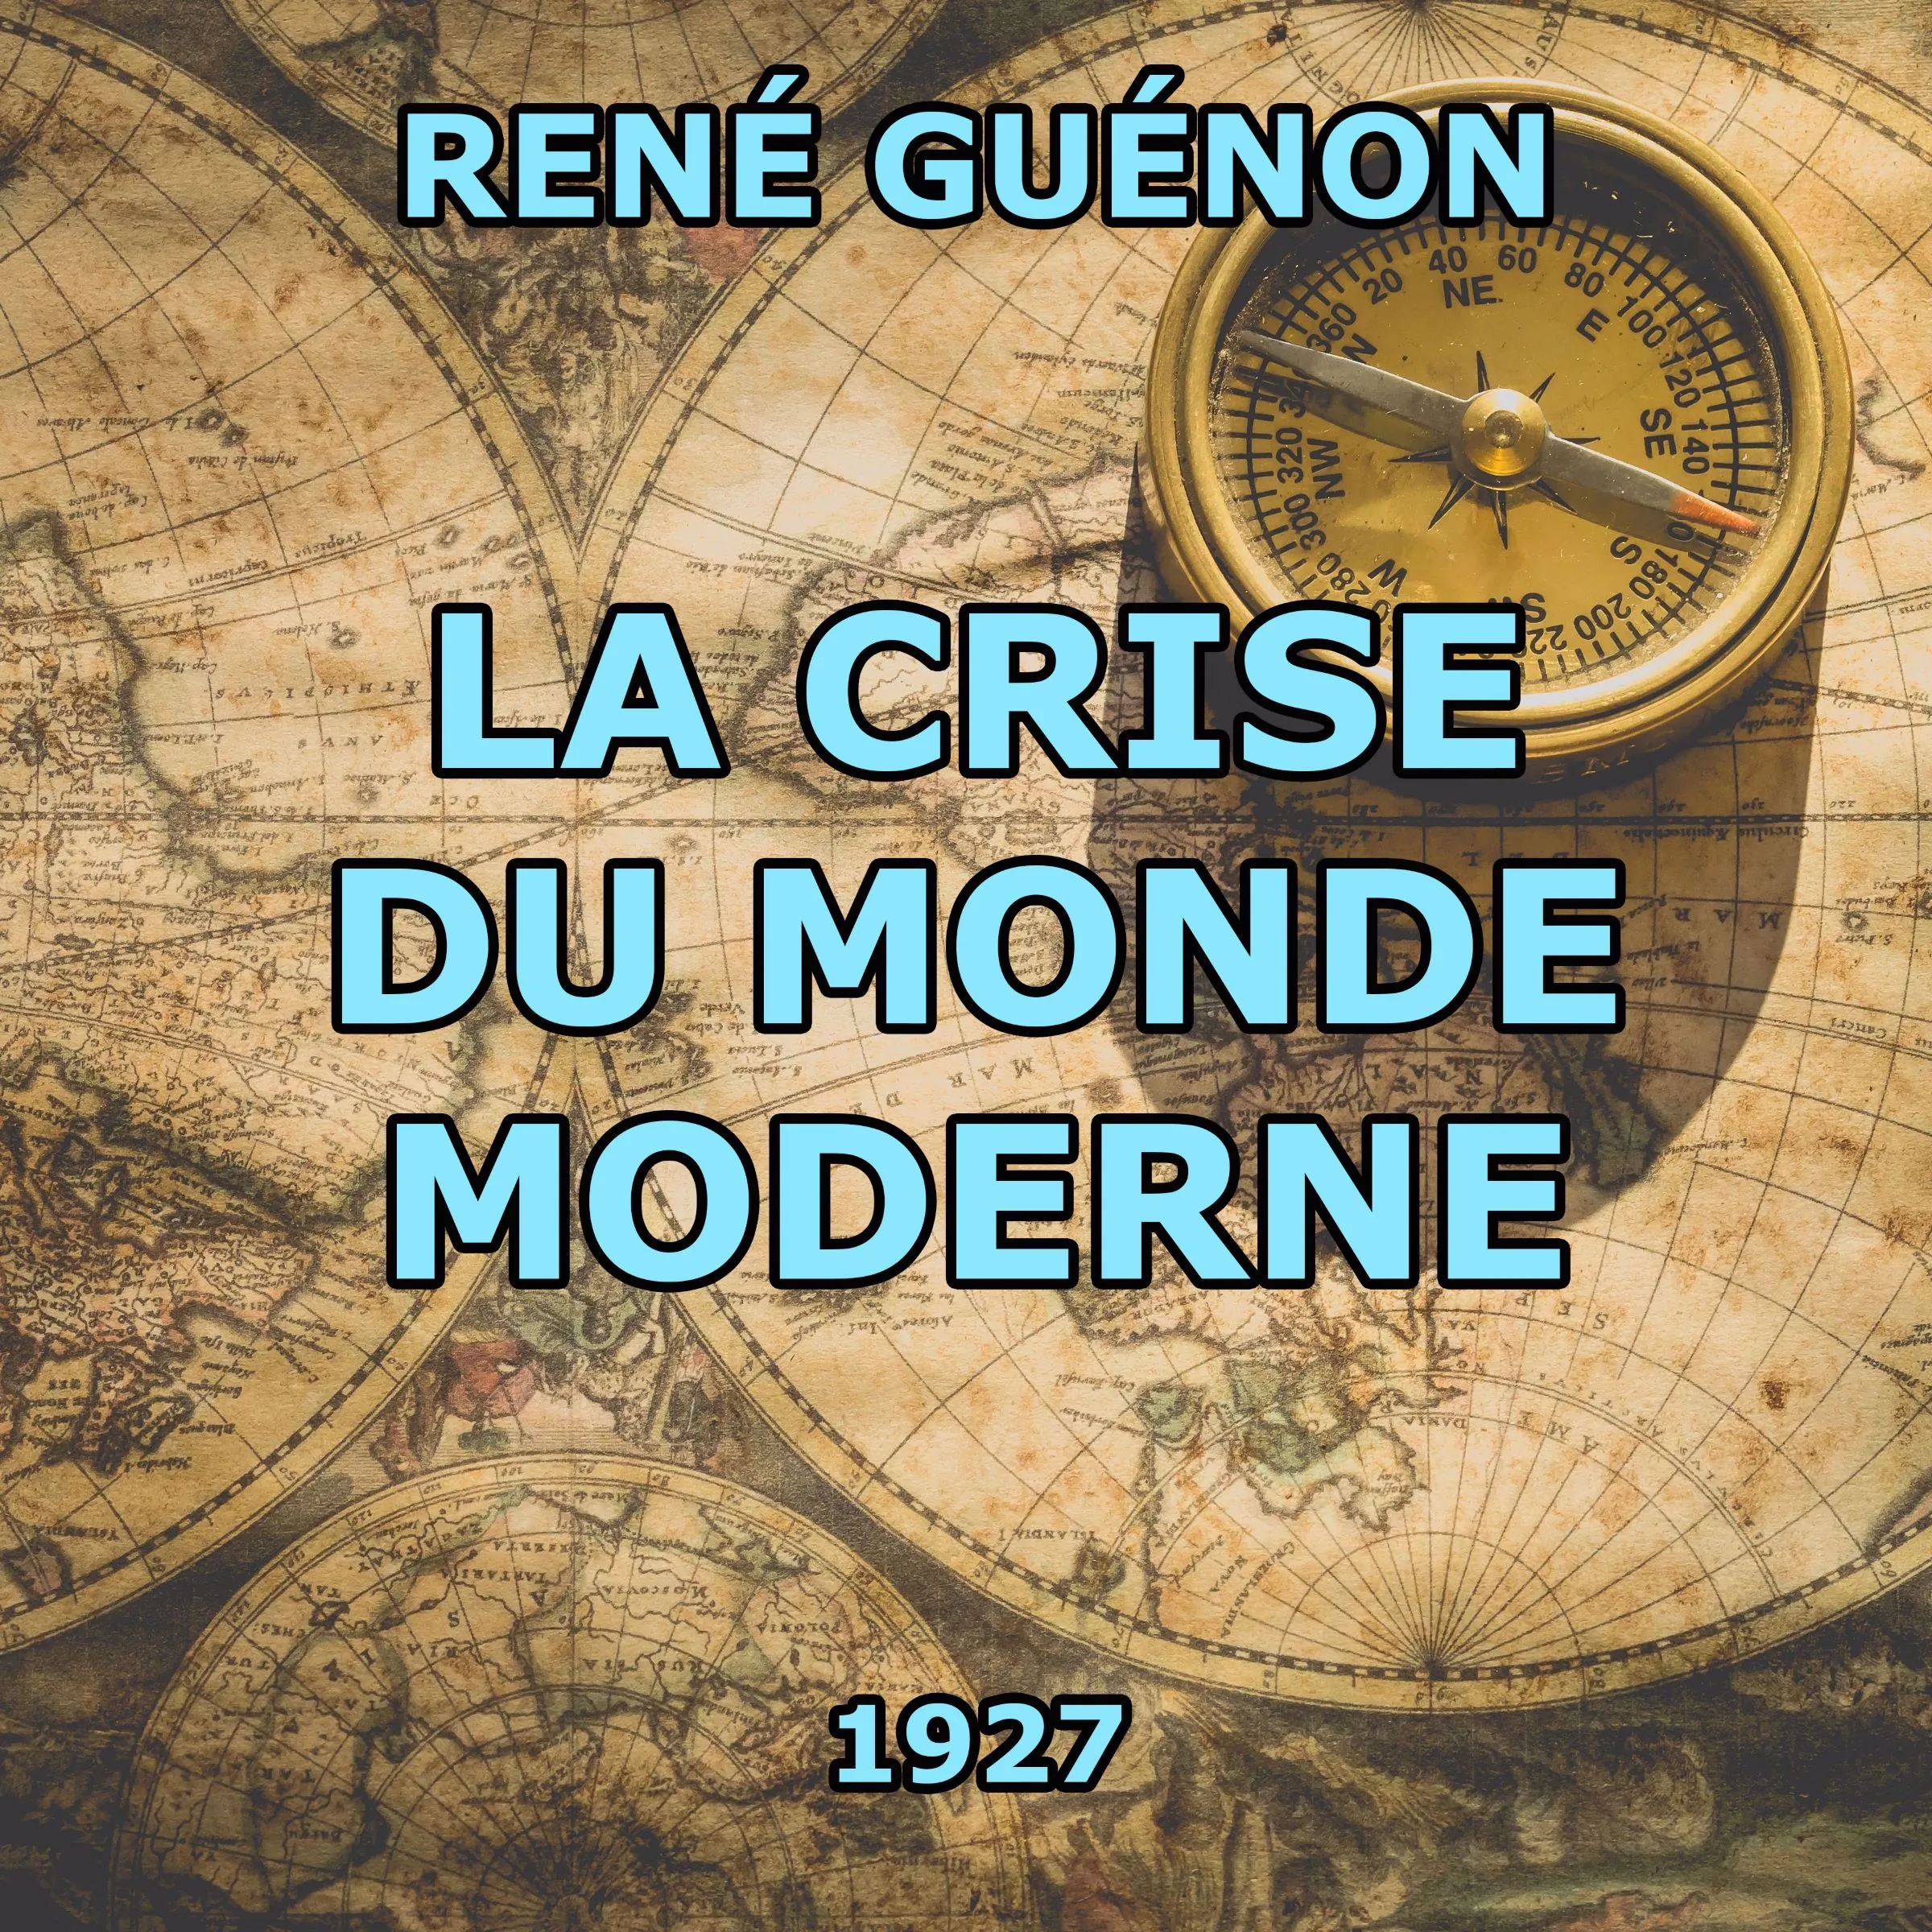 La Crise du monde moderne Audiobook by René Guénon